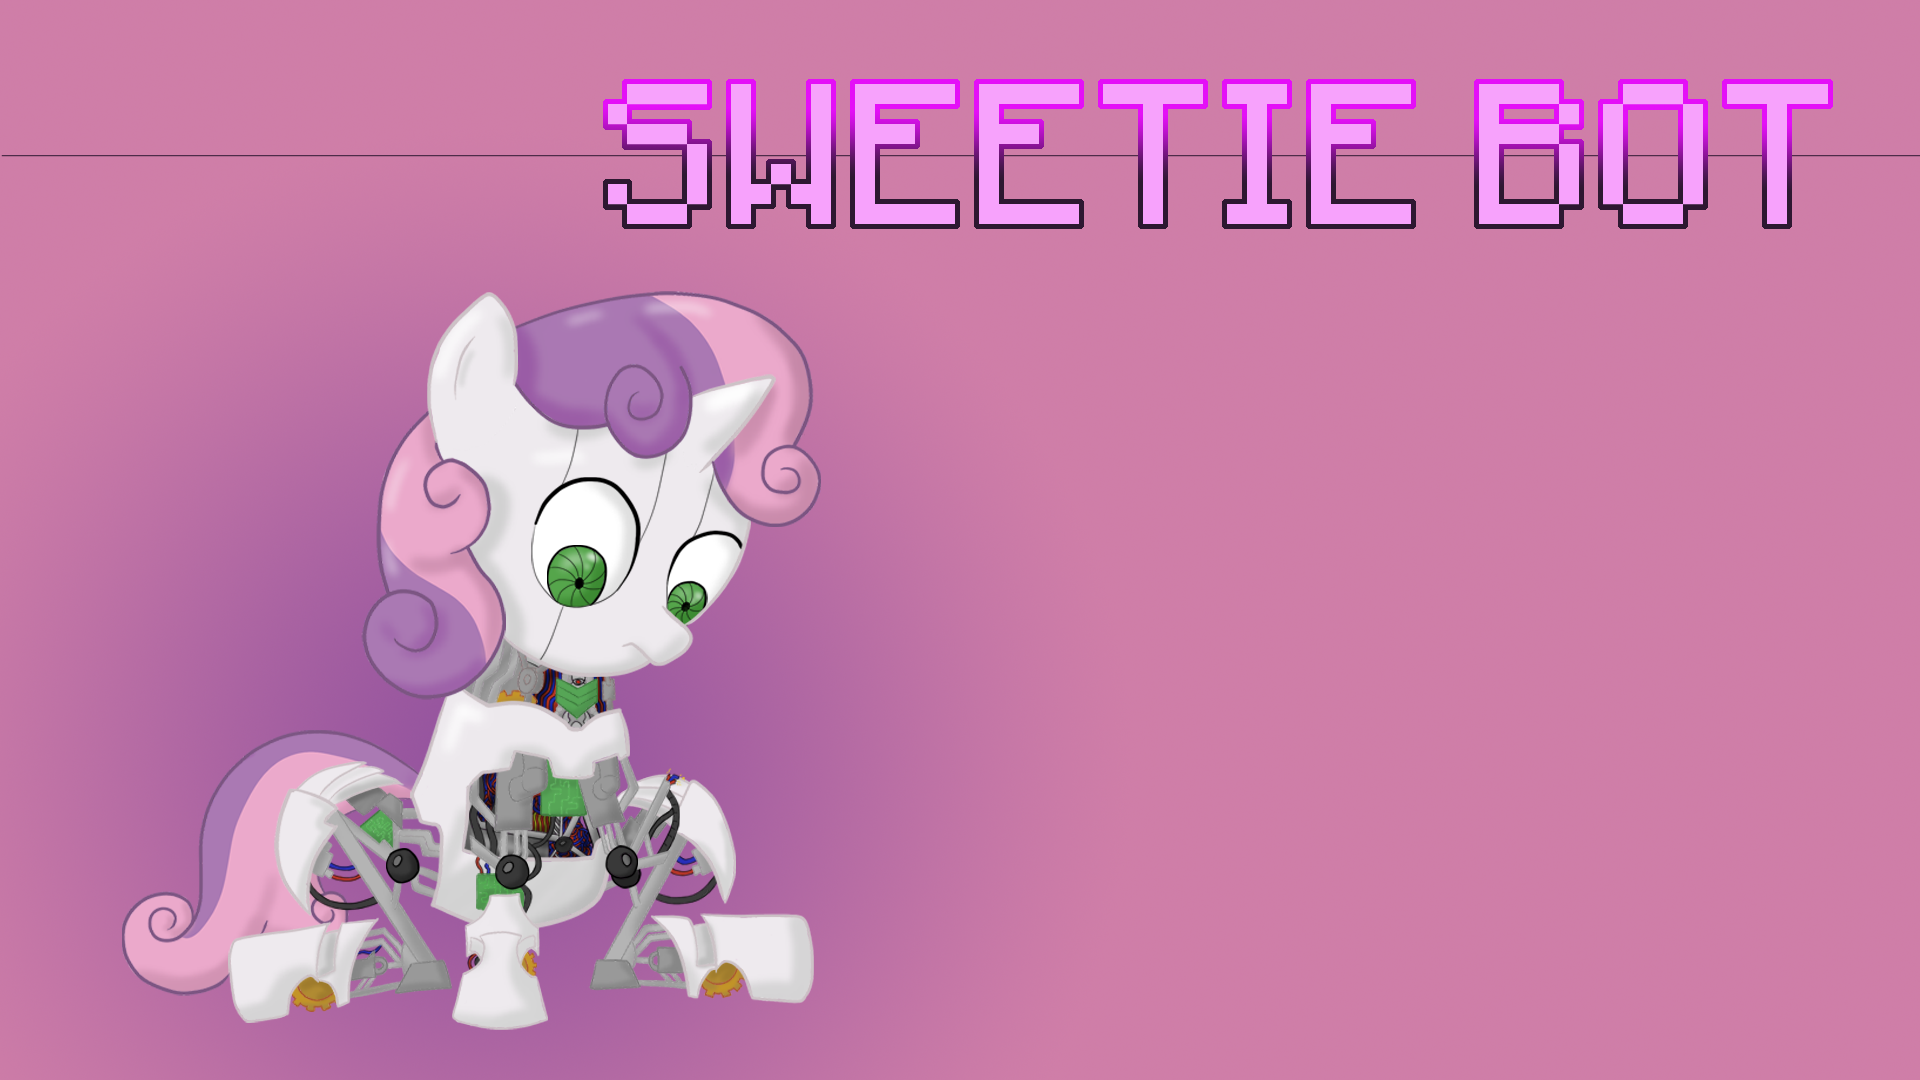 Sweetie Bot Wallpaper by Ezynell